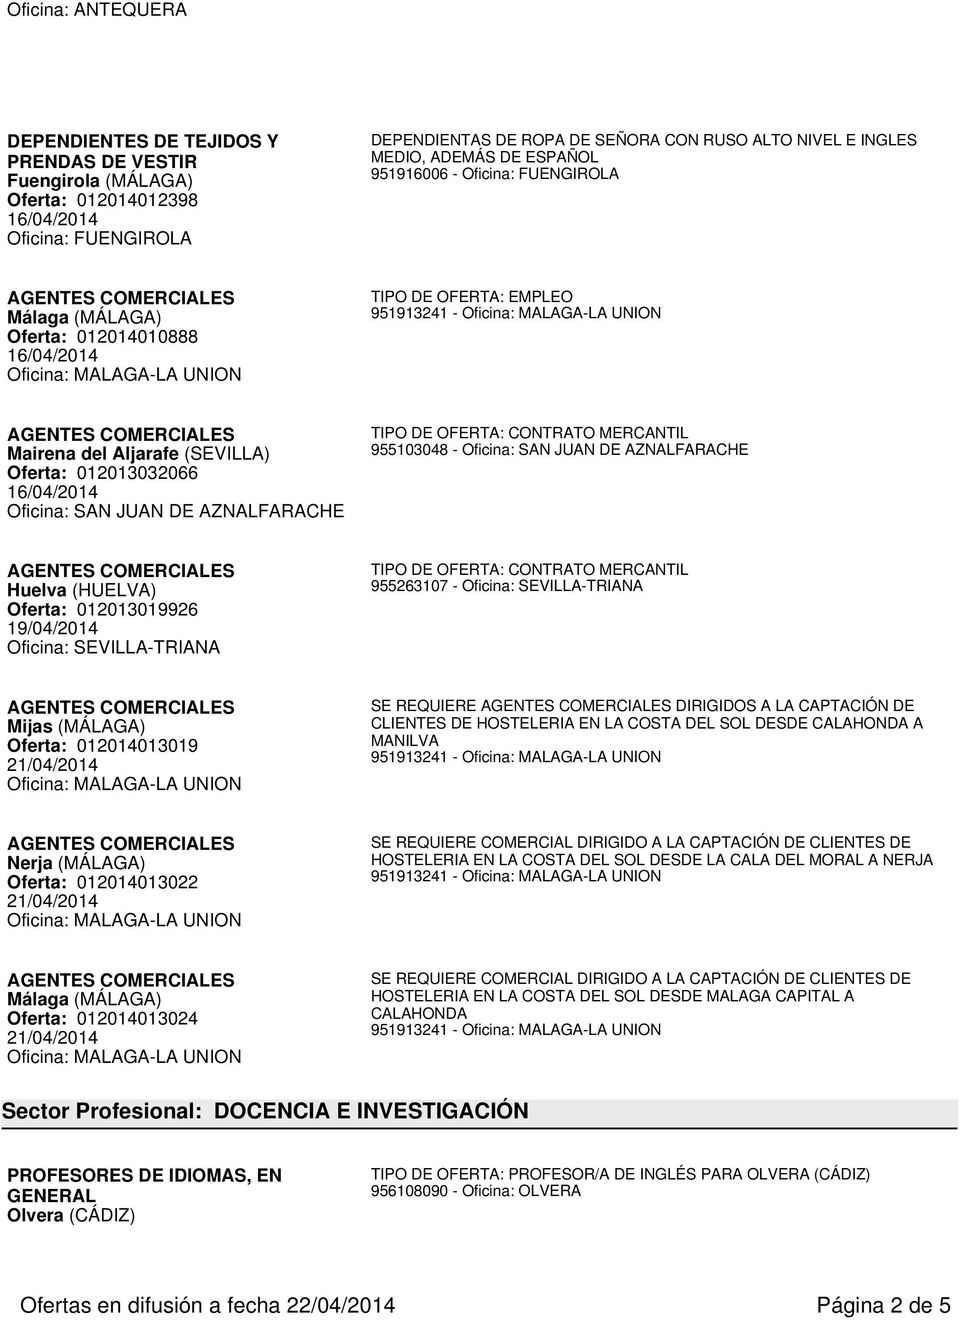 AZNALFARACHE Huelva (HUELVA) Oferta: 012013019926 19/04/2014 Mijas (MÁLAGA) Oferta: 012014013019 SE REQUIERE DIRIGIDOS A LA CAPTACIÓN DE CLIENTES DE HOSTELERIA EN LA COSTA DEL SOL DESDE CALAHONDA A